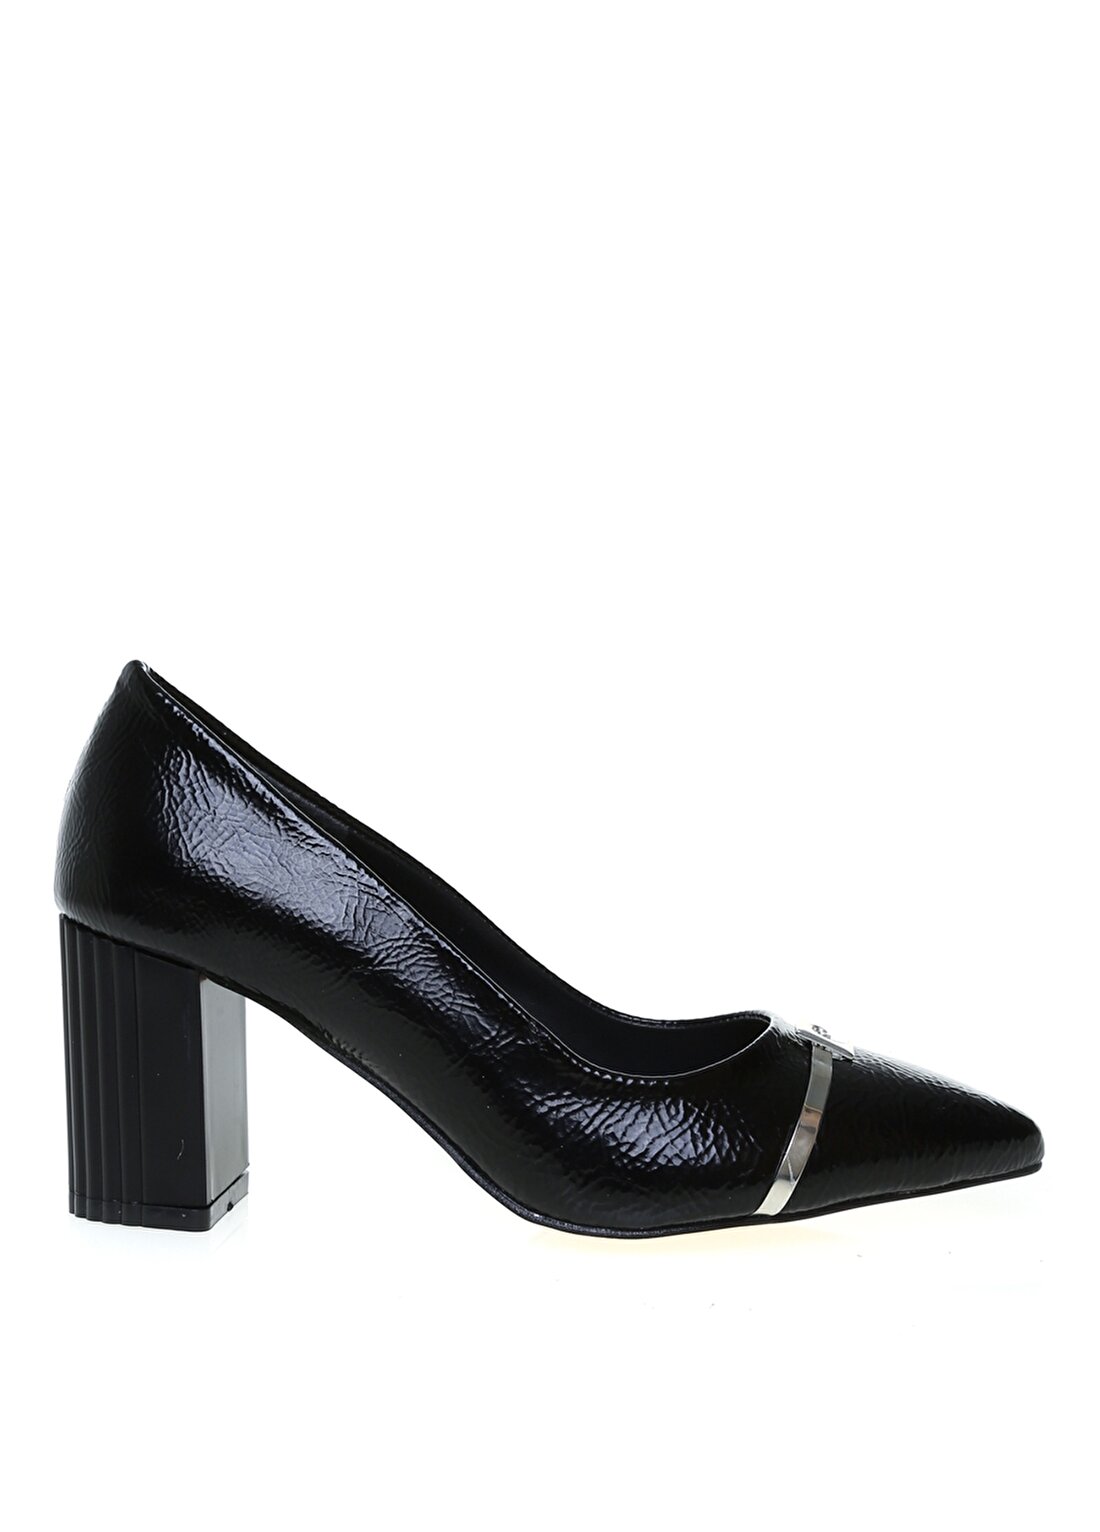 Pierre Cardin Kadın Siyah Topuklu Ayakkabı PC-51203